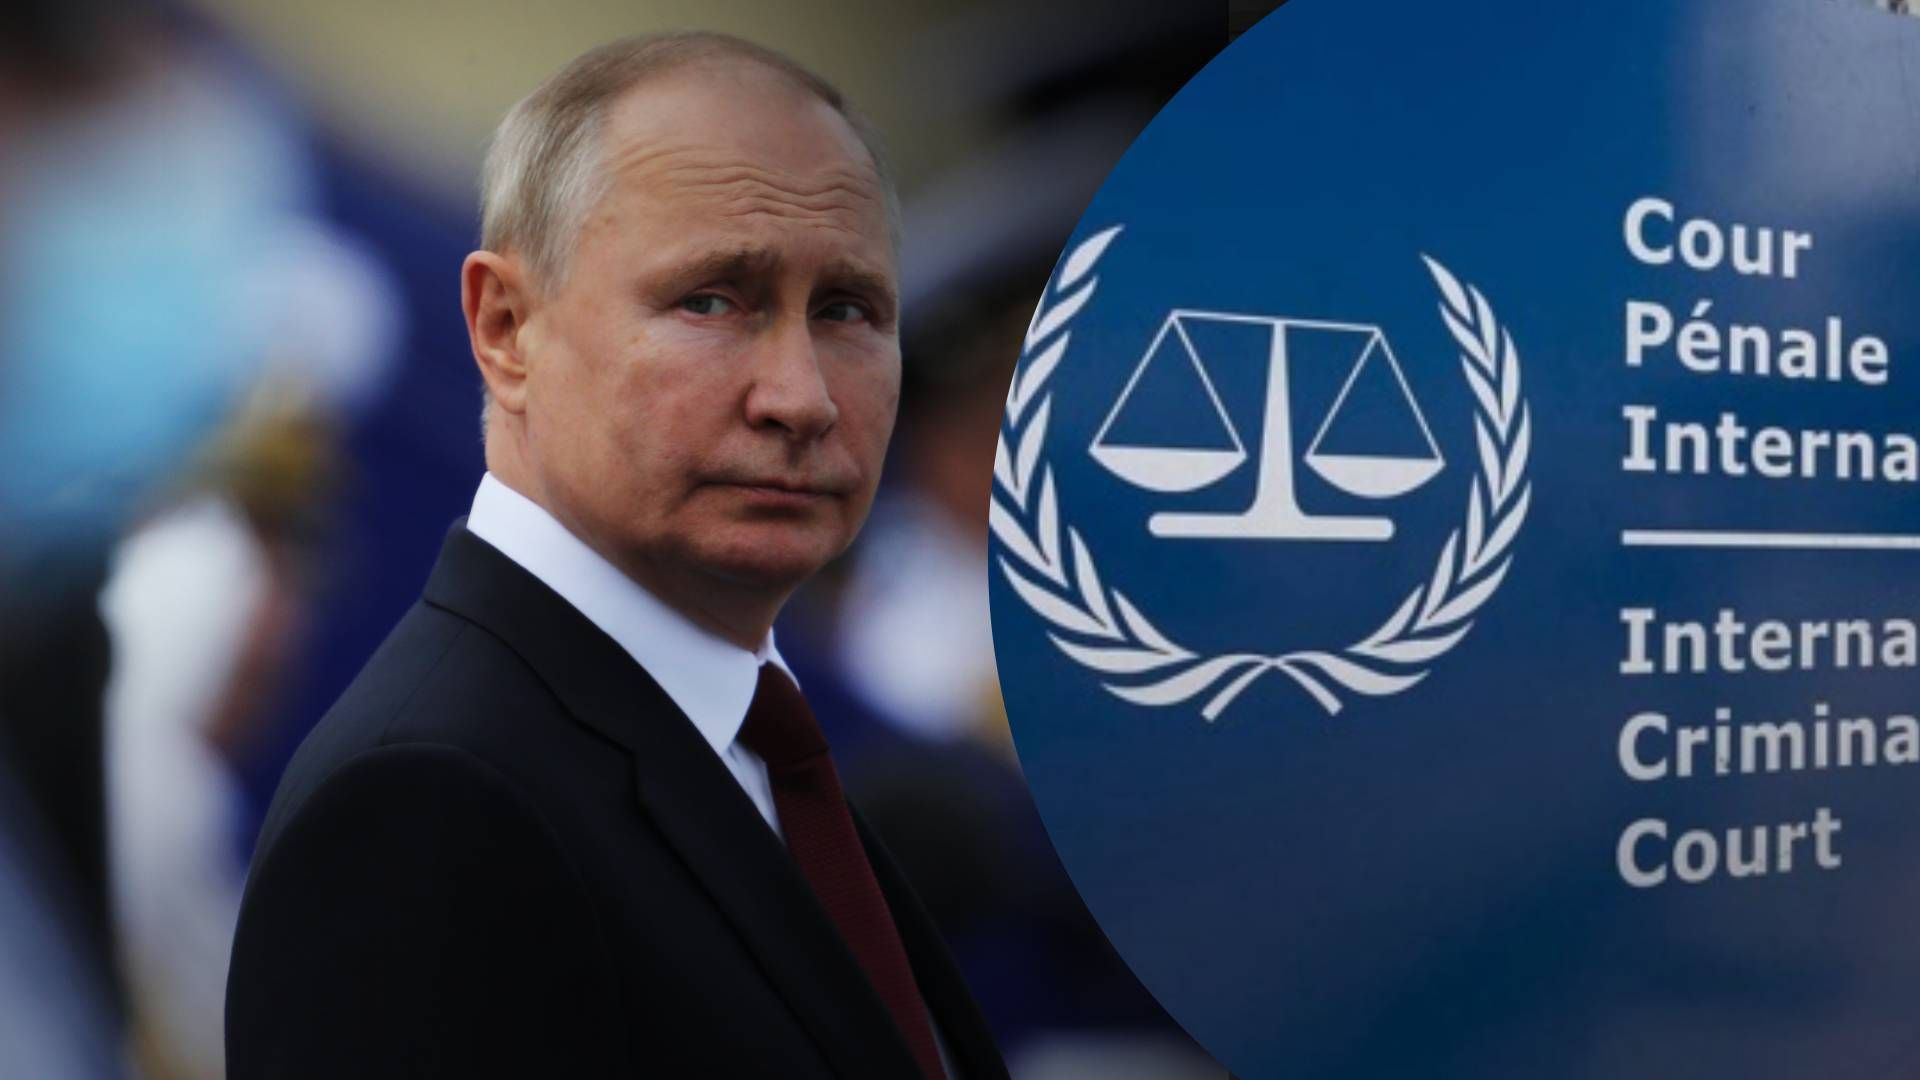 Путін в Гаазі - чи будуть притягнуті до відповідальності МКС в Гаазі російські чиновники